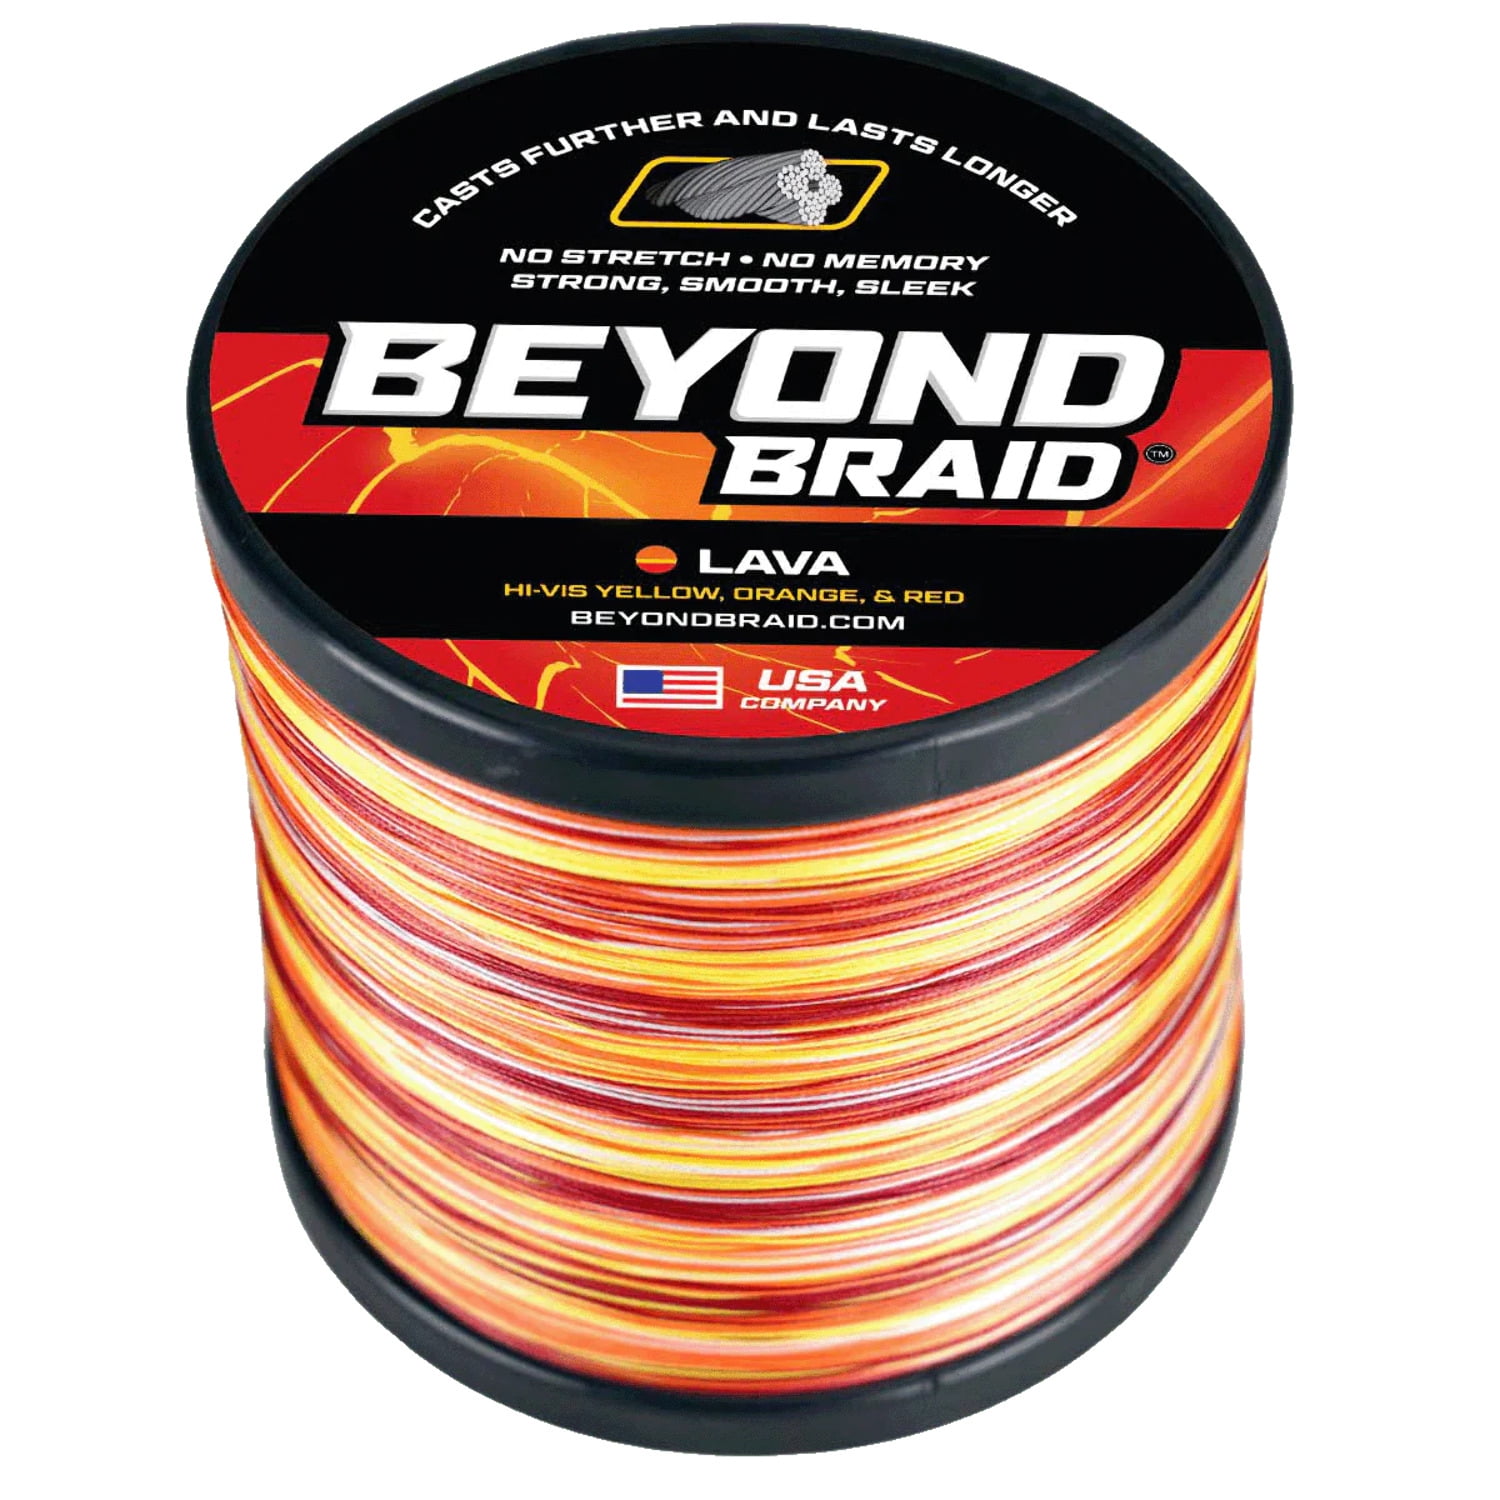 Beyond Braid - Braided Fishing Line